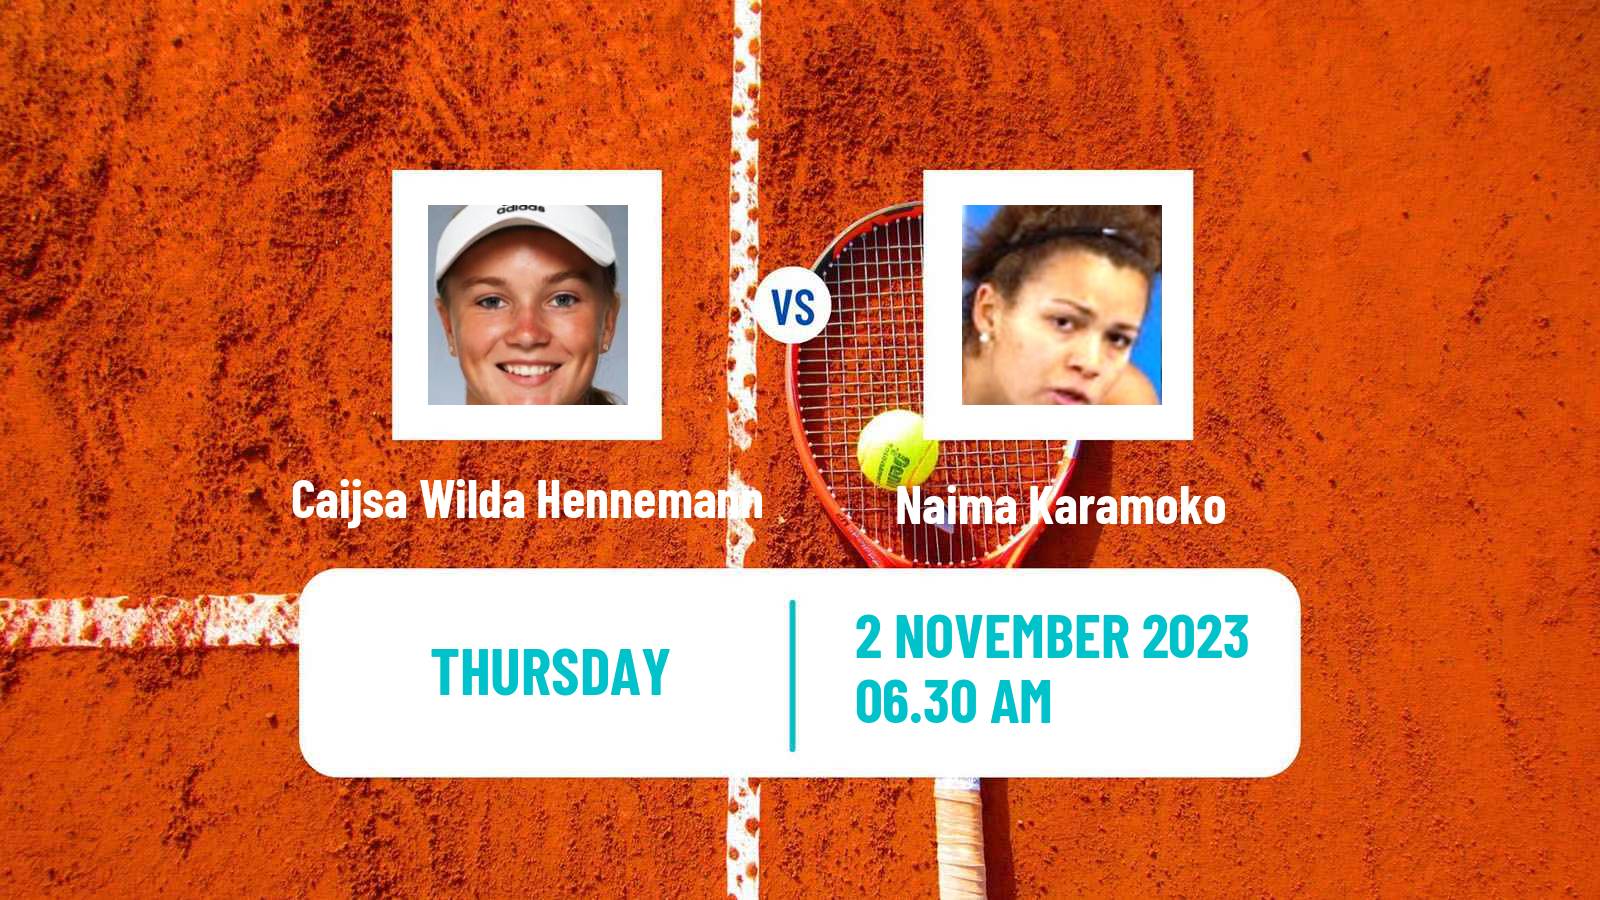 Tennis ITF W15 Nasbypark Women Caijsa Wilda Hennemann - Naima Karamoko